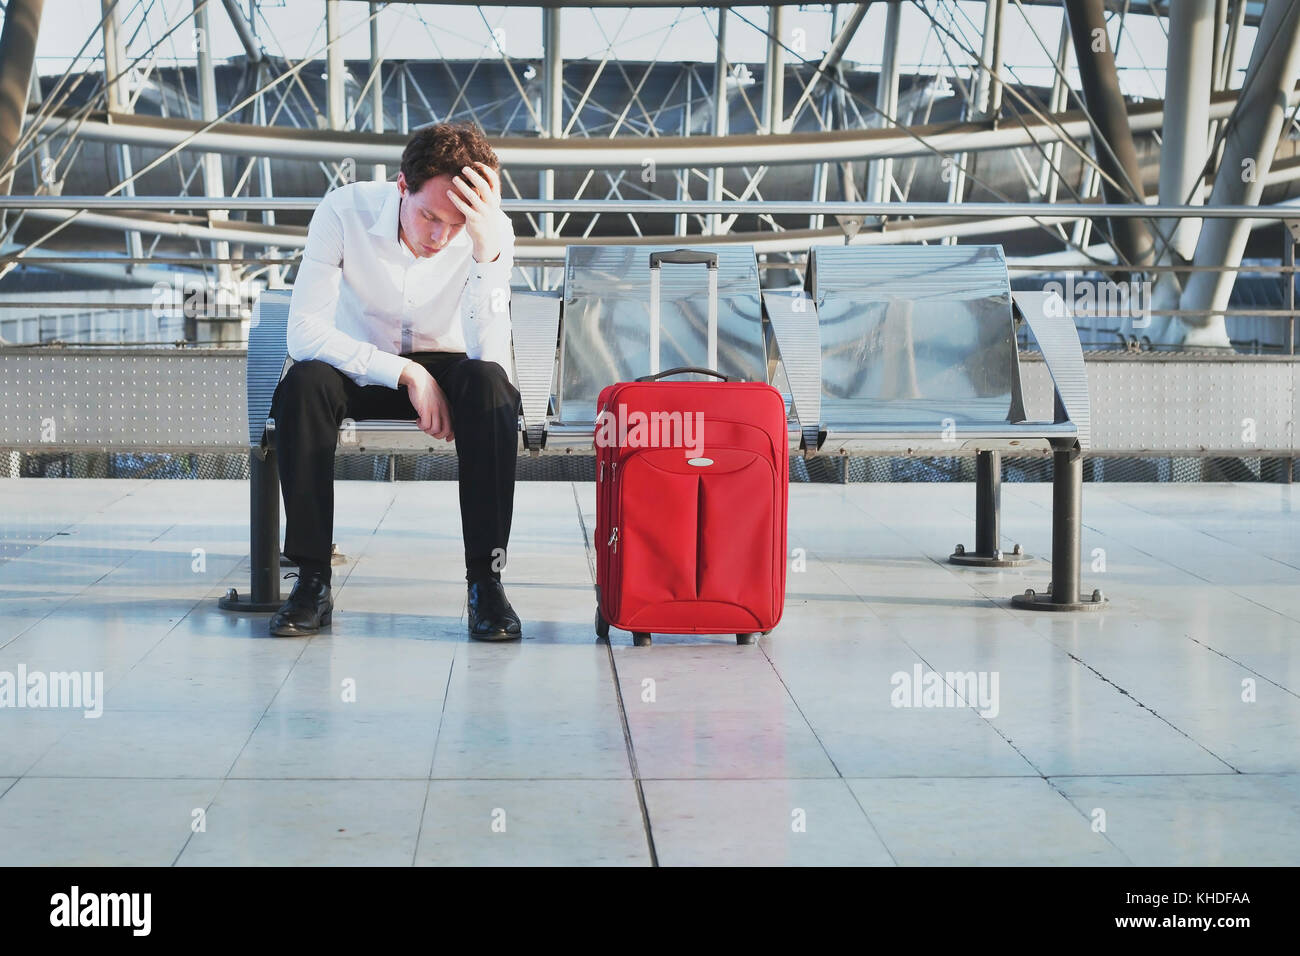 Flug Verspätung oder ein Problem in der Airport, müde, verzweifelt Passagier im Terminal wartet mit Koffer Stockfoto